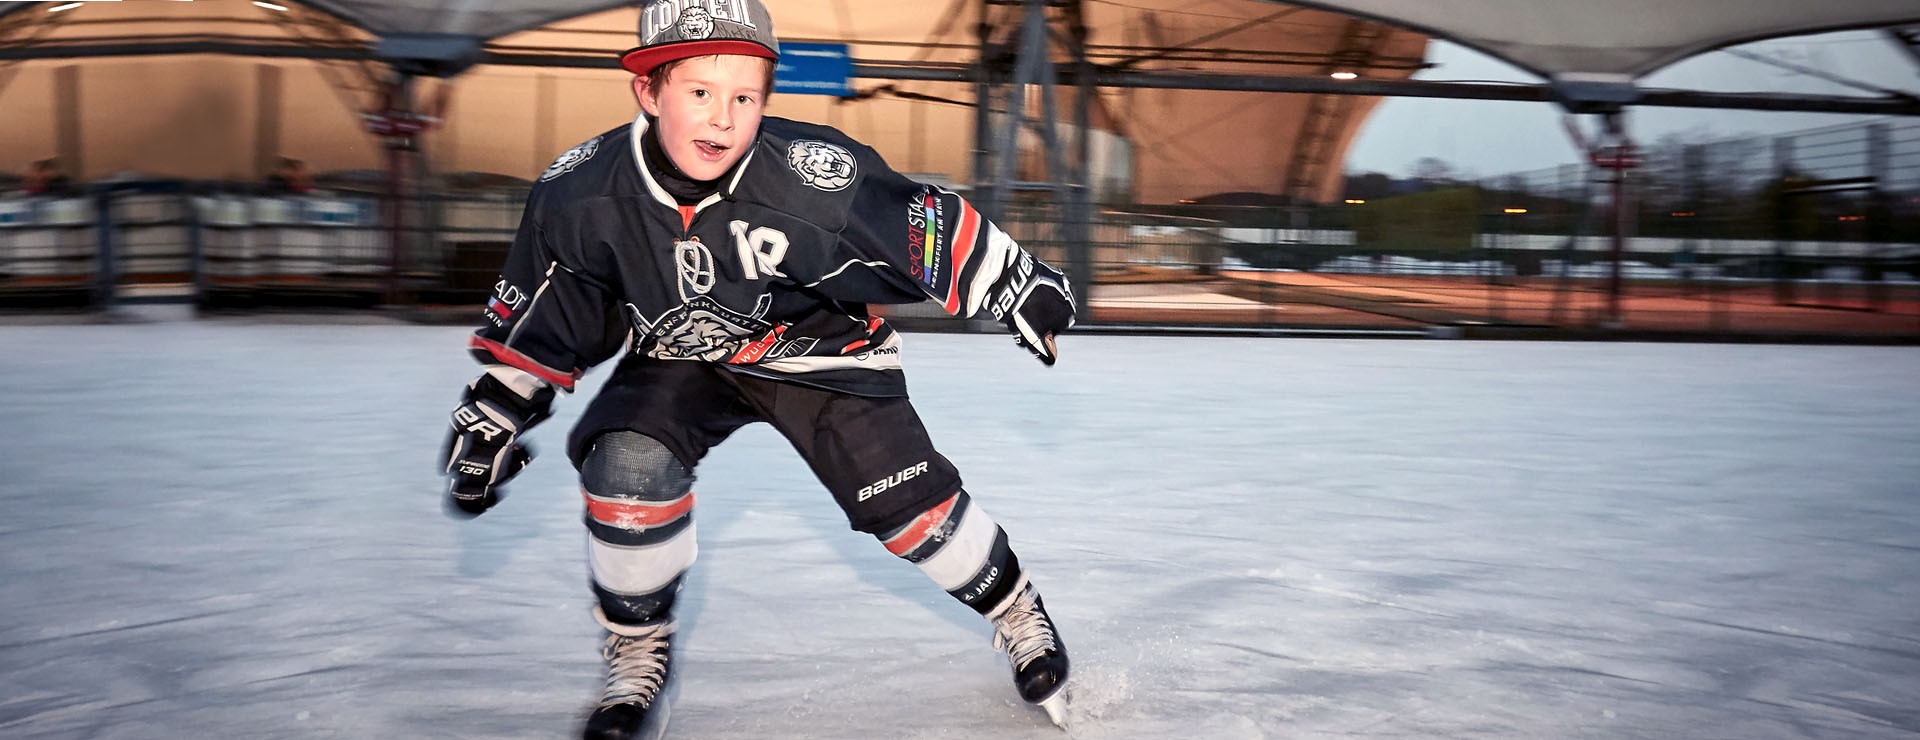 Junger Eishockeyspieler auf dem Eis